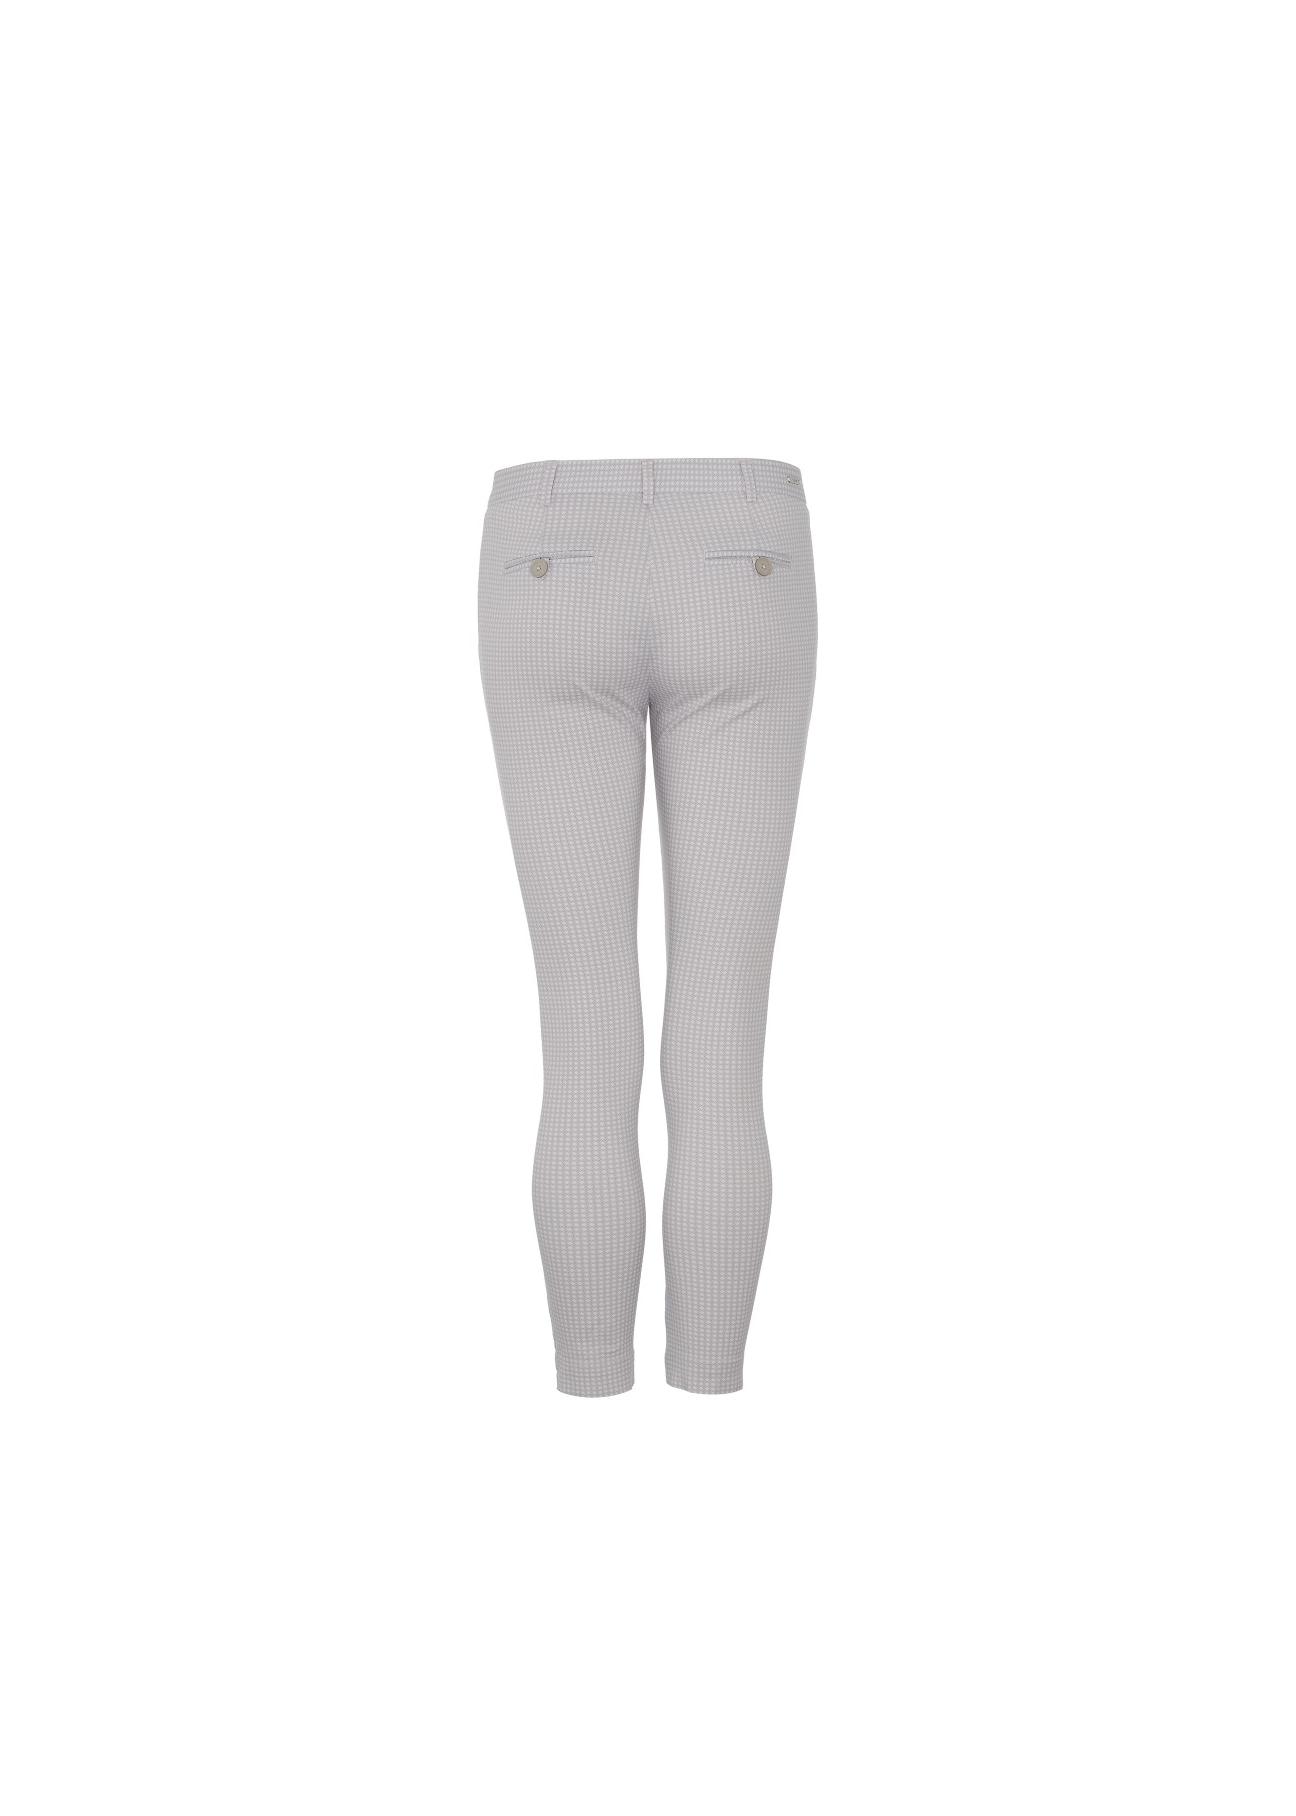 Spodnie damskie SPODT-0022-93(W18)